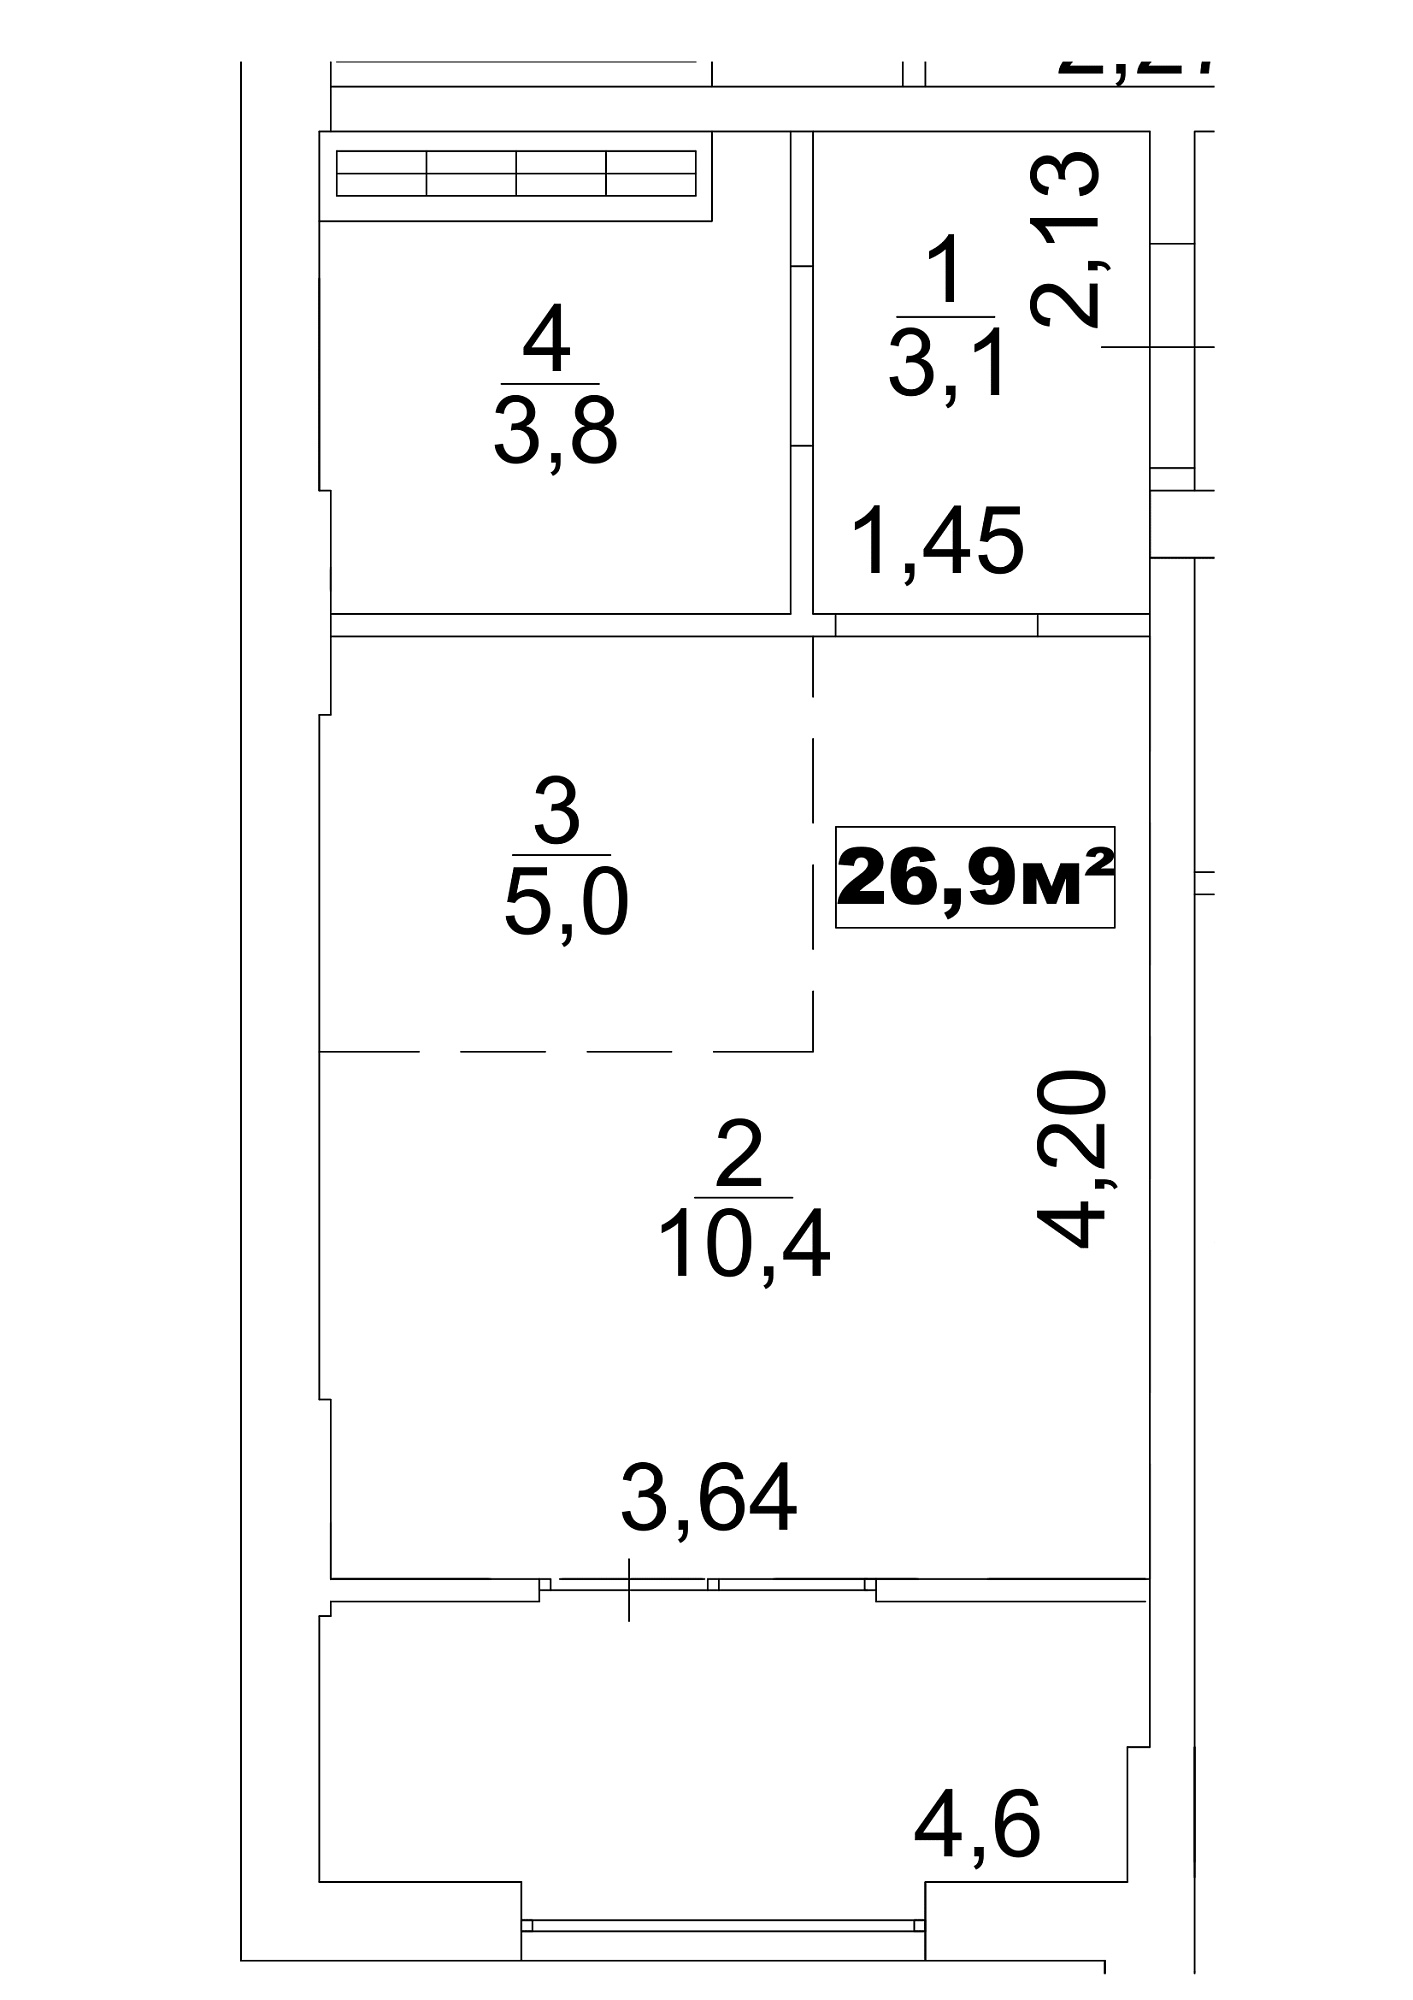 Планировка Smart-квартира площей 26.9м2, AB-13-04/0027а.